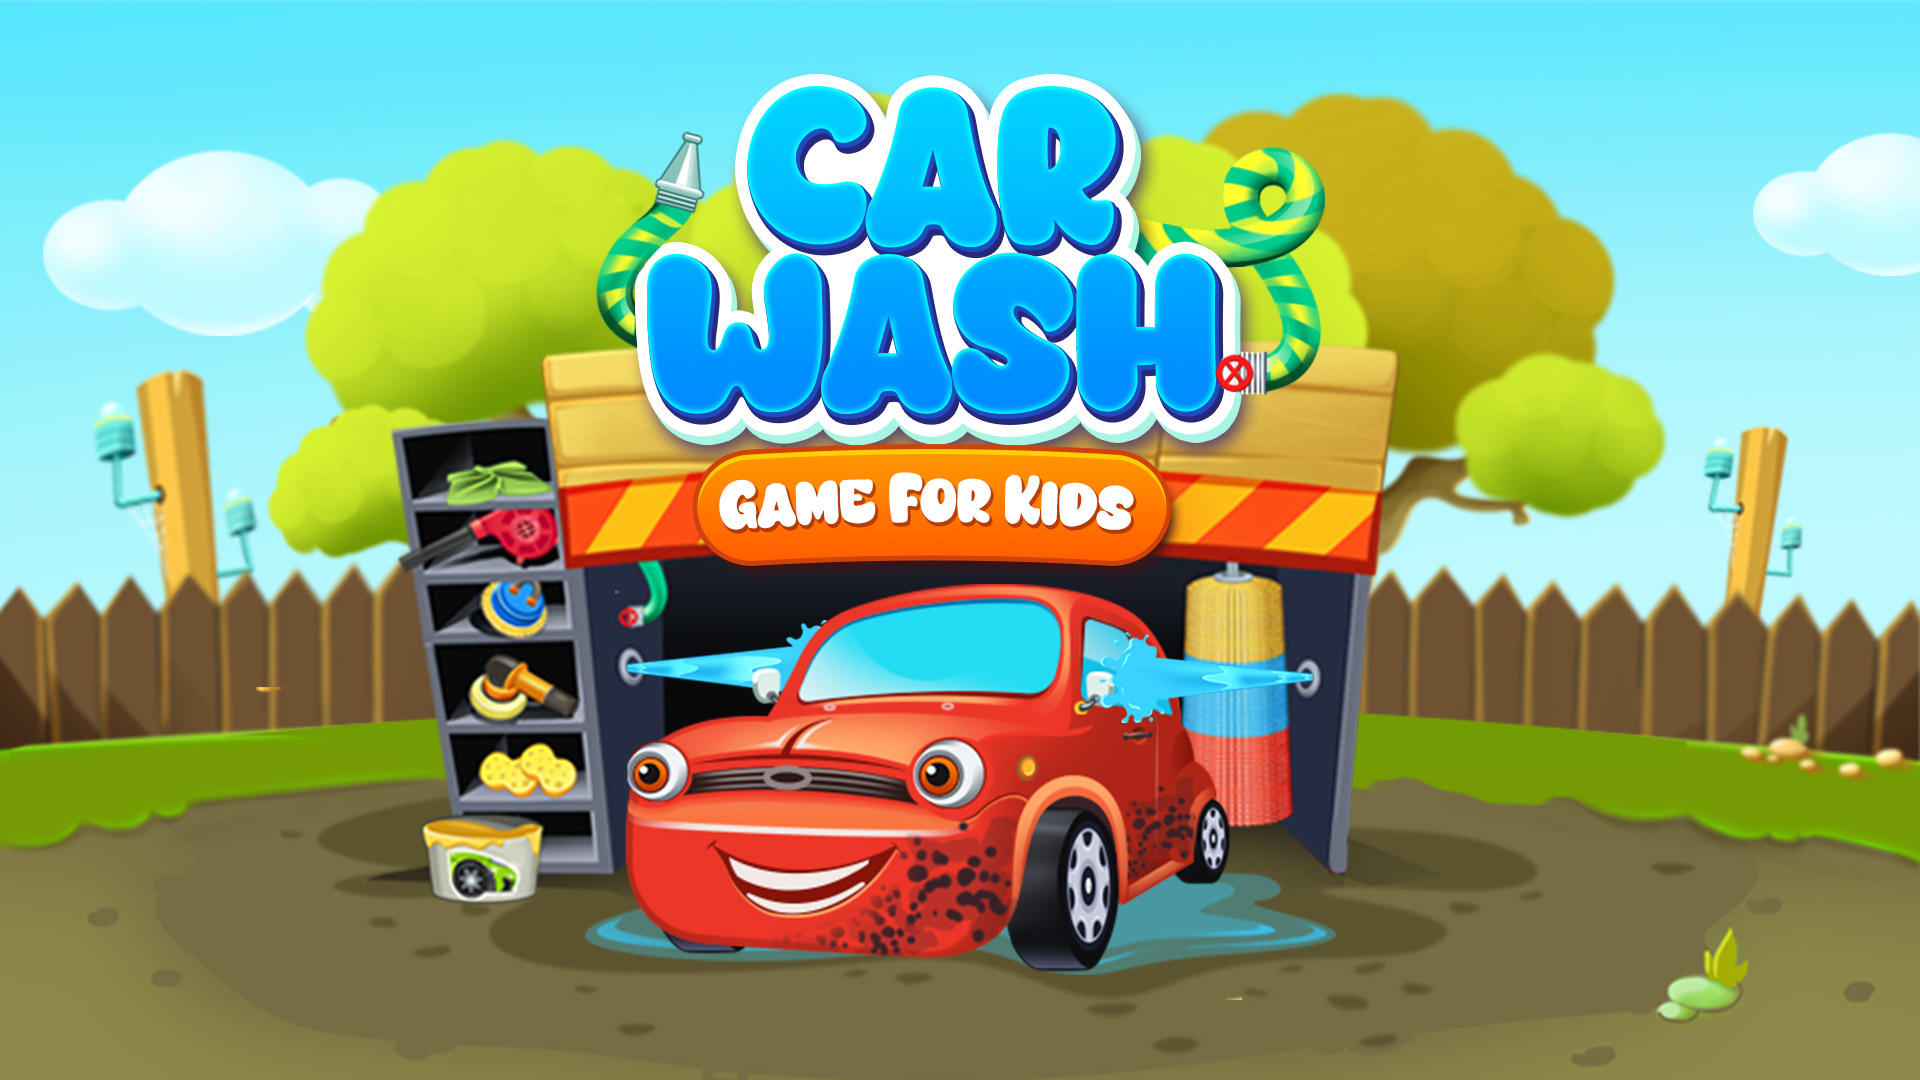 Jogos Cars - Portal das Crianças